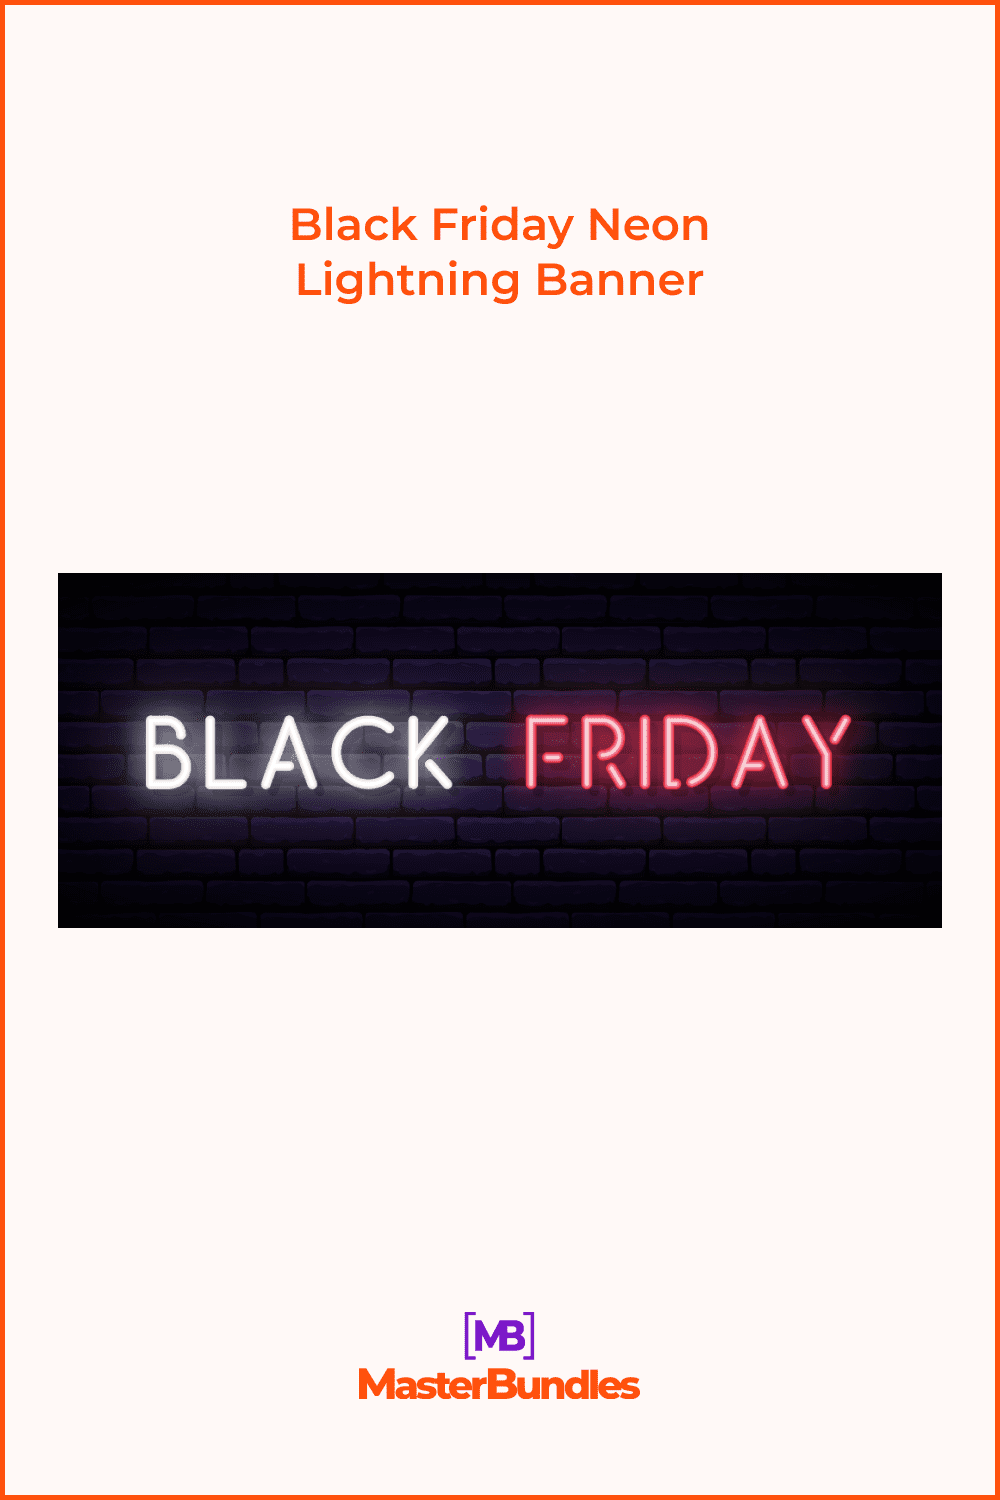 Horizontal Neon Banner for Black Friday.